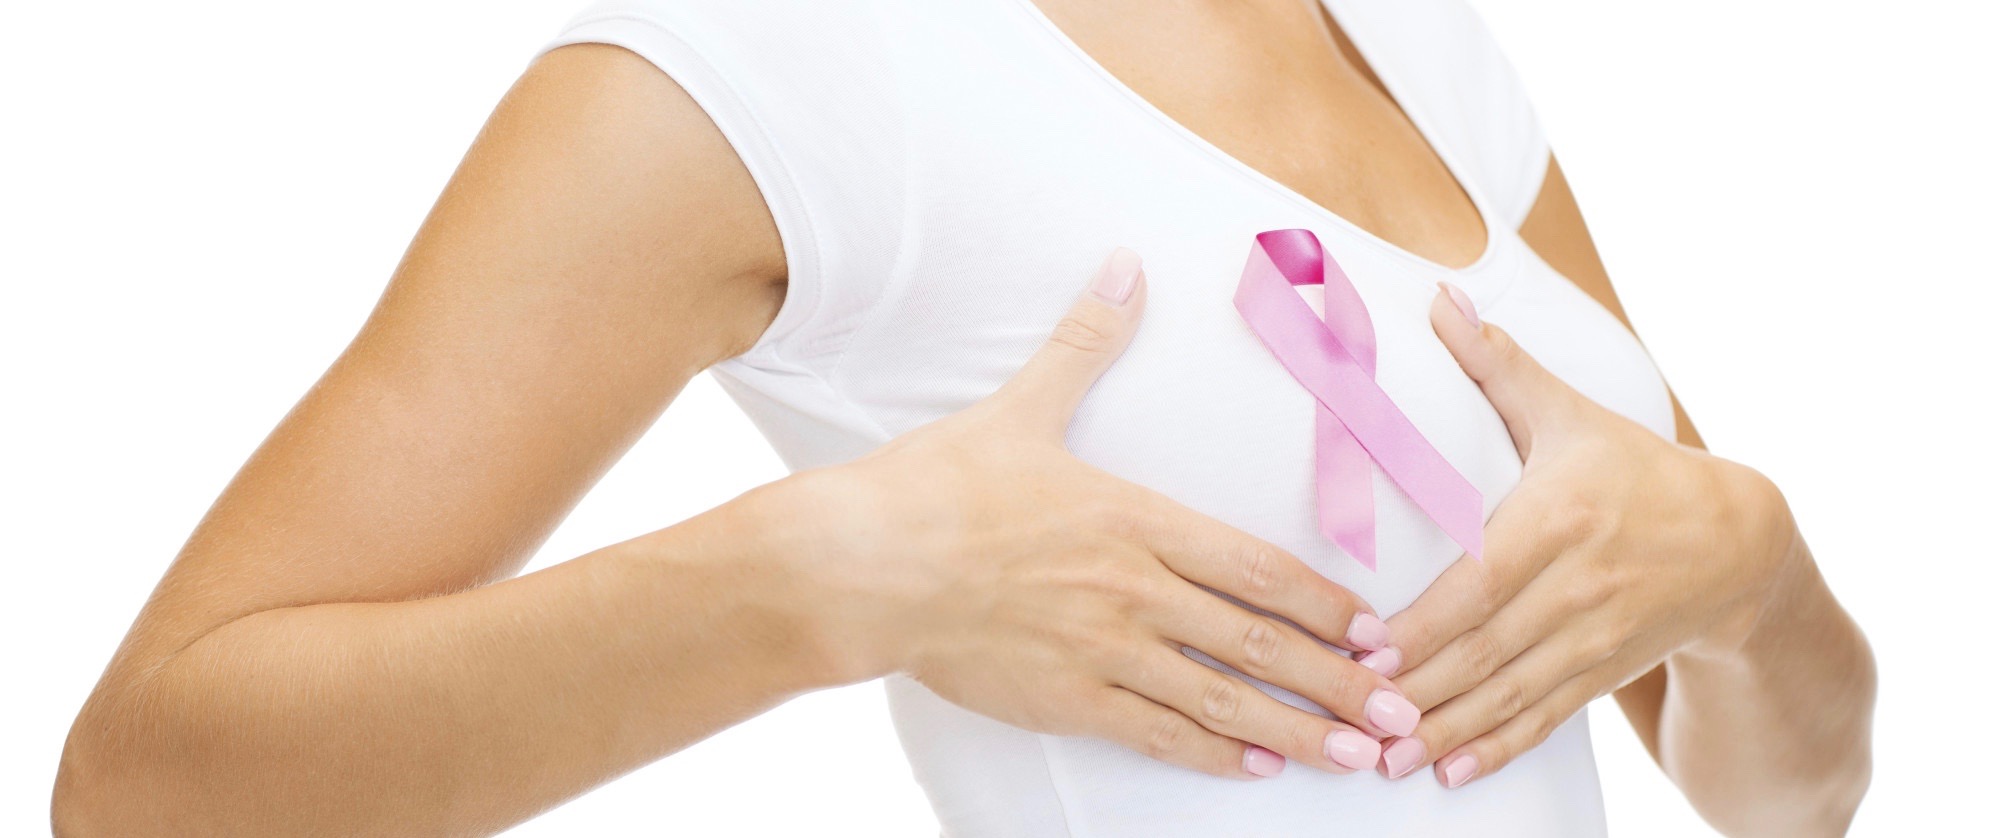 Październik miesiącem walki z rakiem piersi!